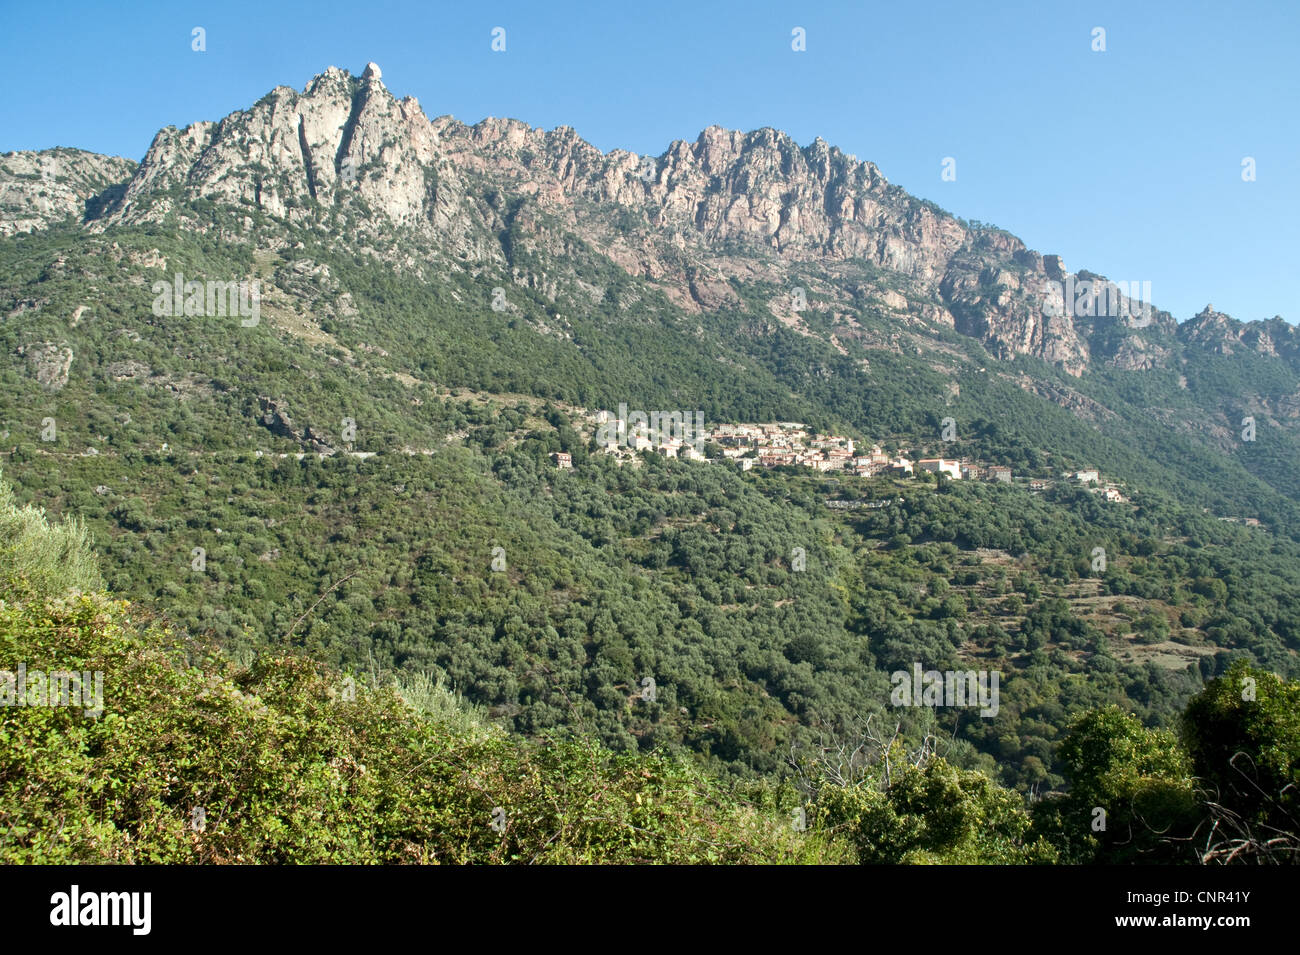 Una vista del villaggio di montagna corsa di Ota e la foresta di querce circostante, sulla costa occidentale dell'isola di Corsica, Francia. Foto Stock